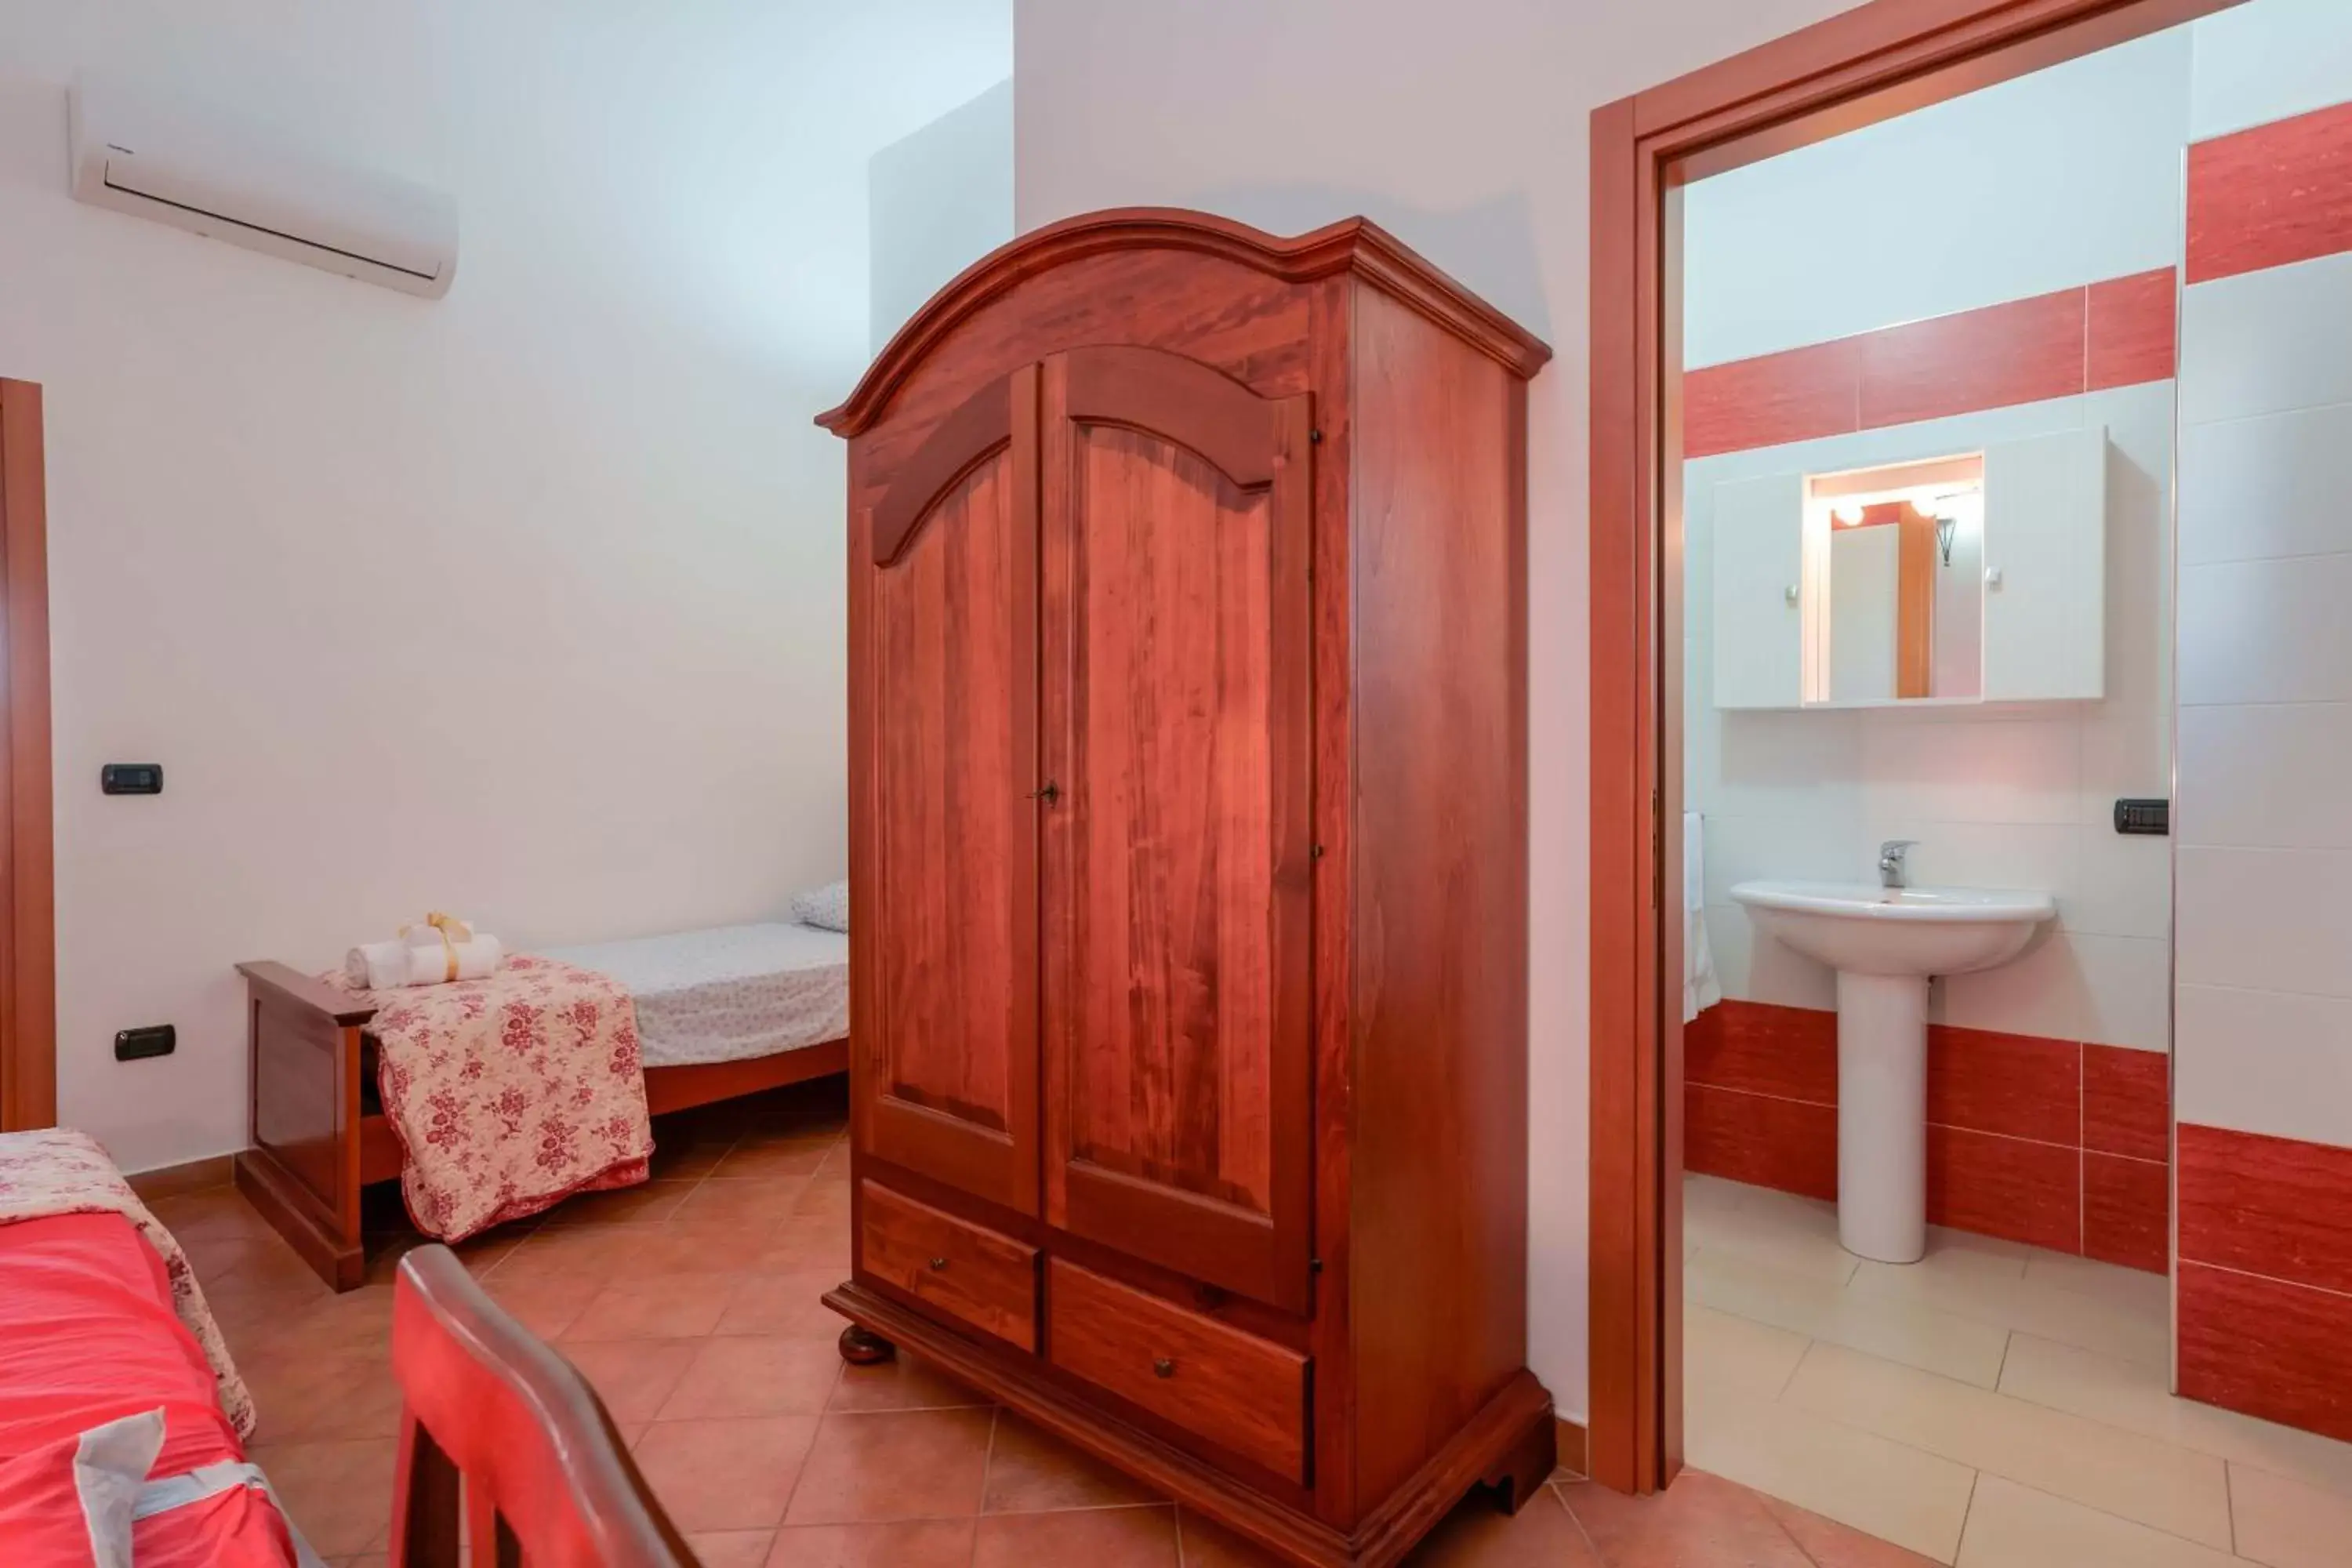 Bedroom, Bathroom in Bed and Breakfast Cairoli Exclusive Room